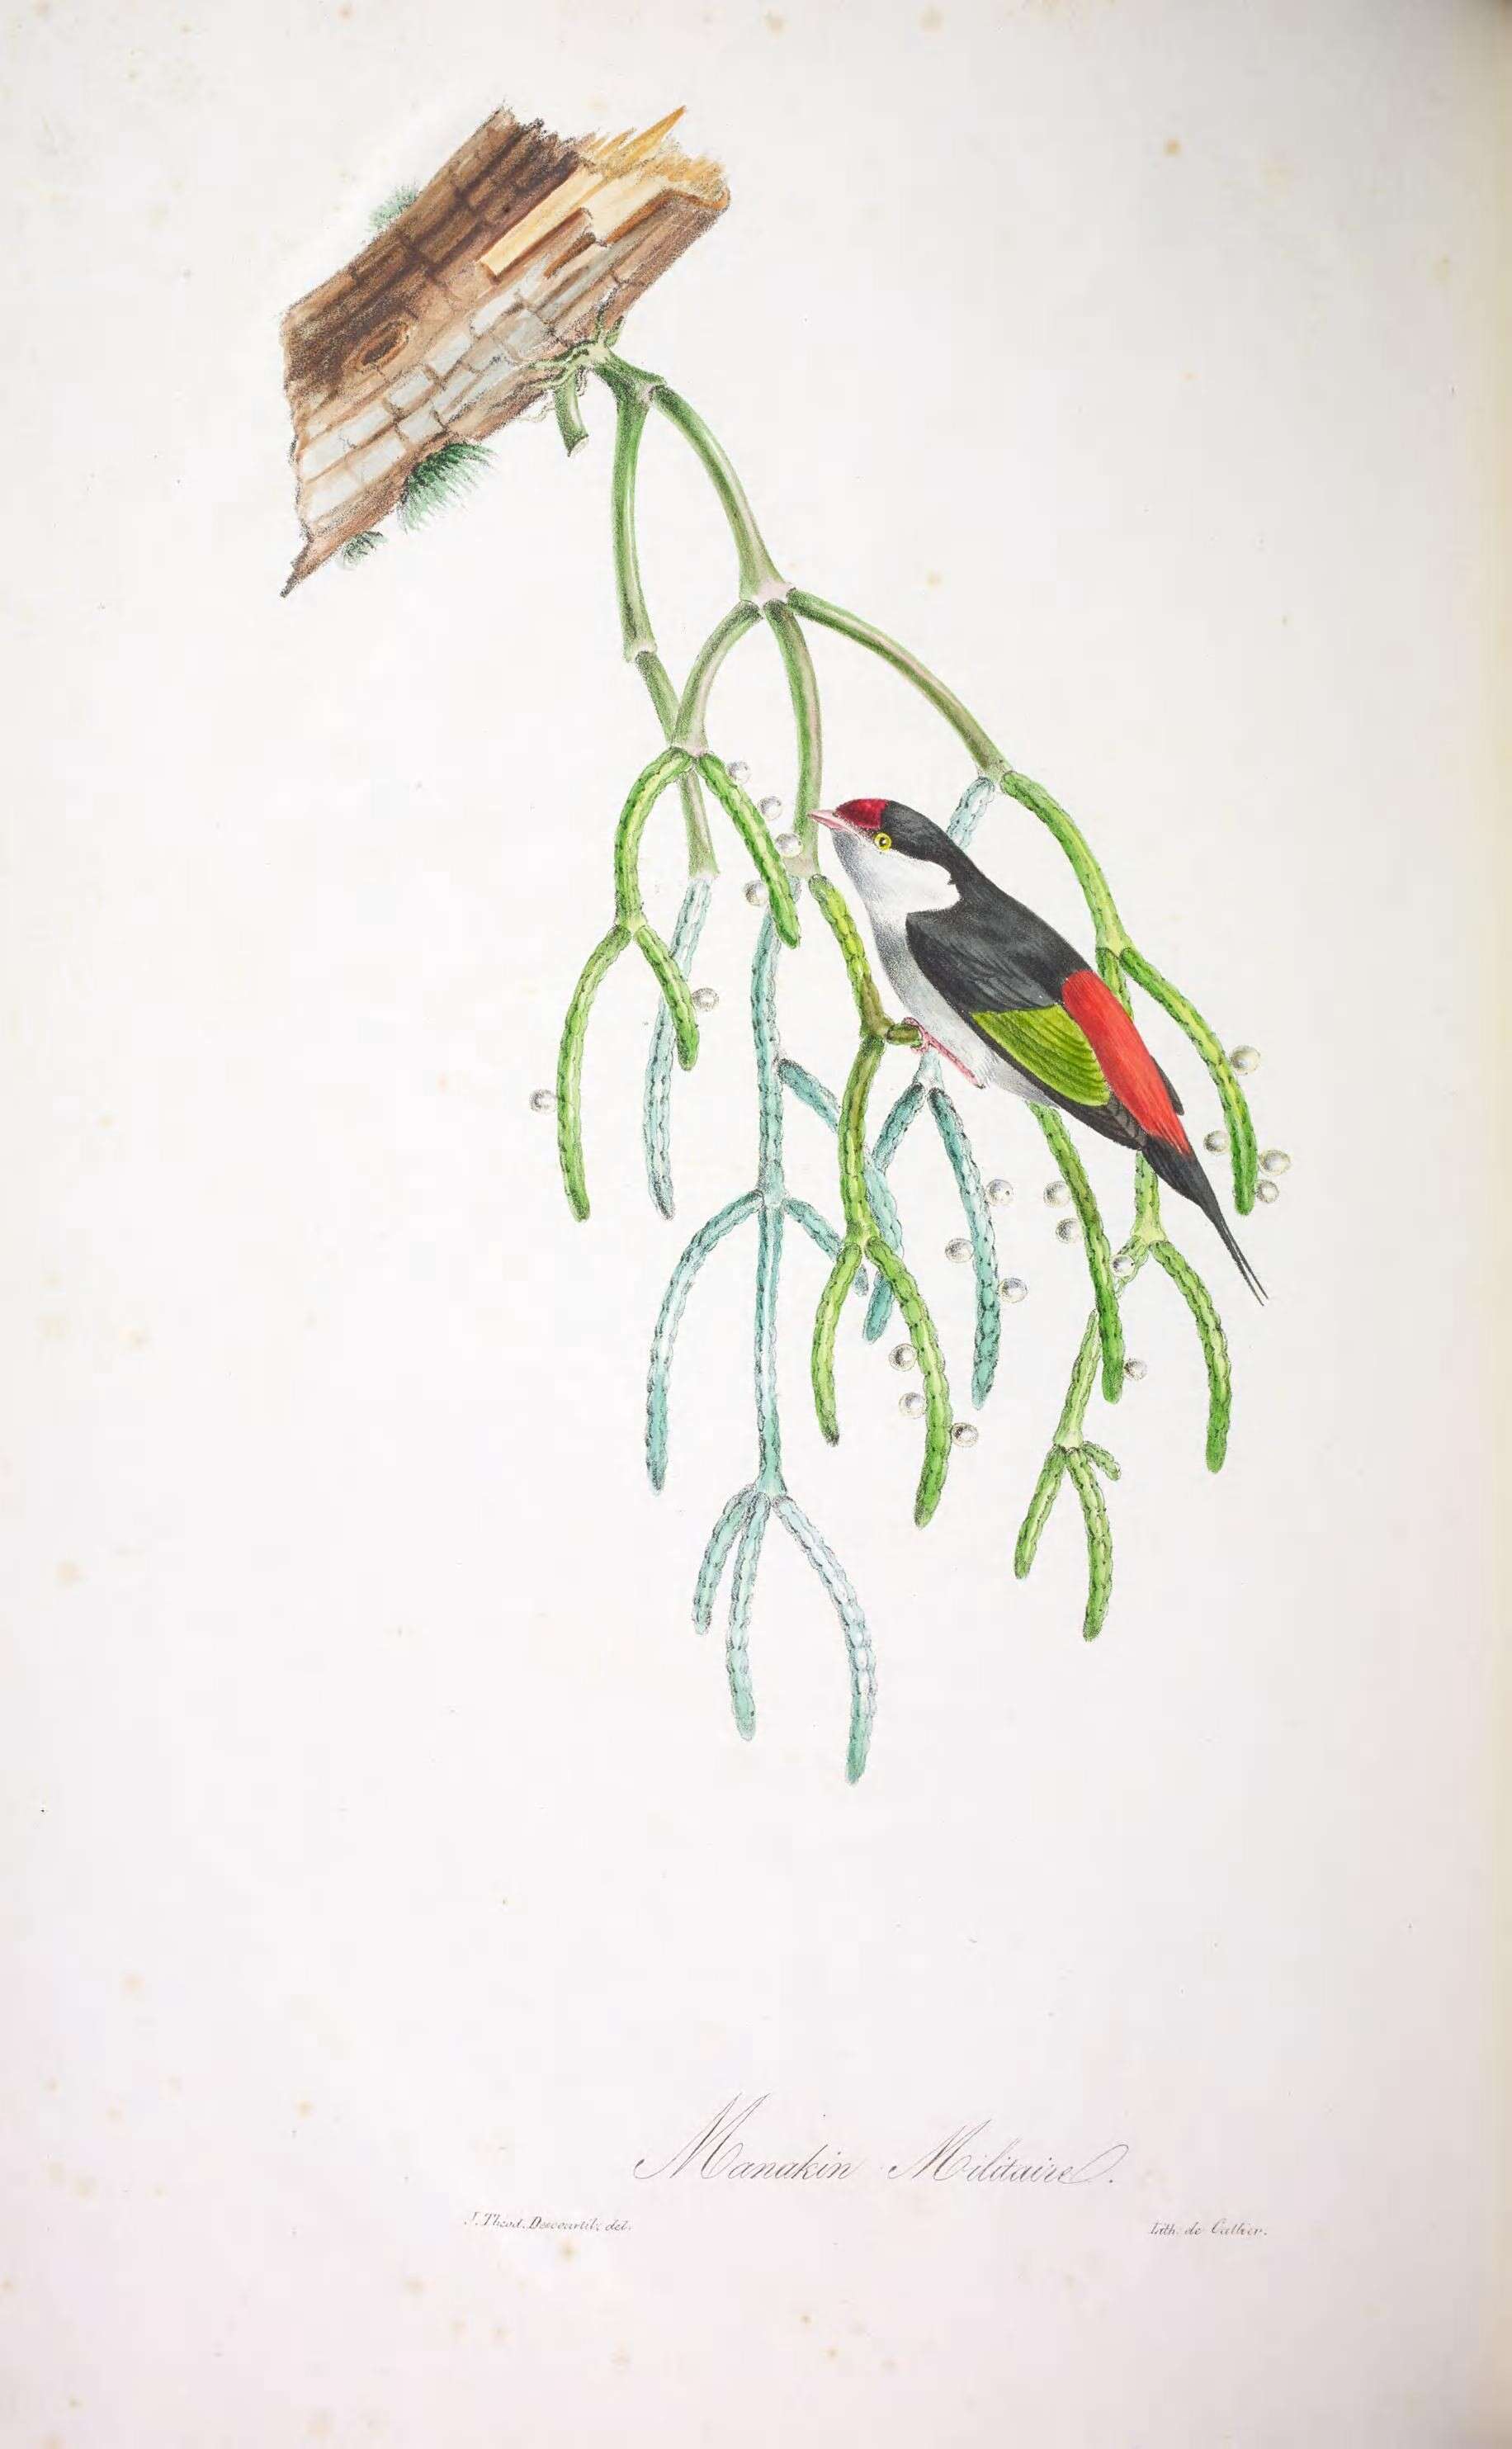 Image of Ilicura Reichenbach 1850